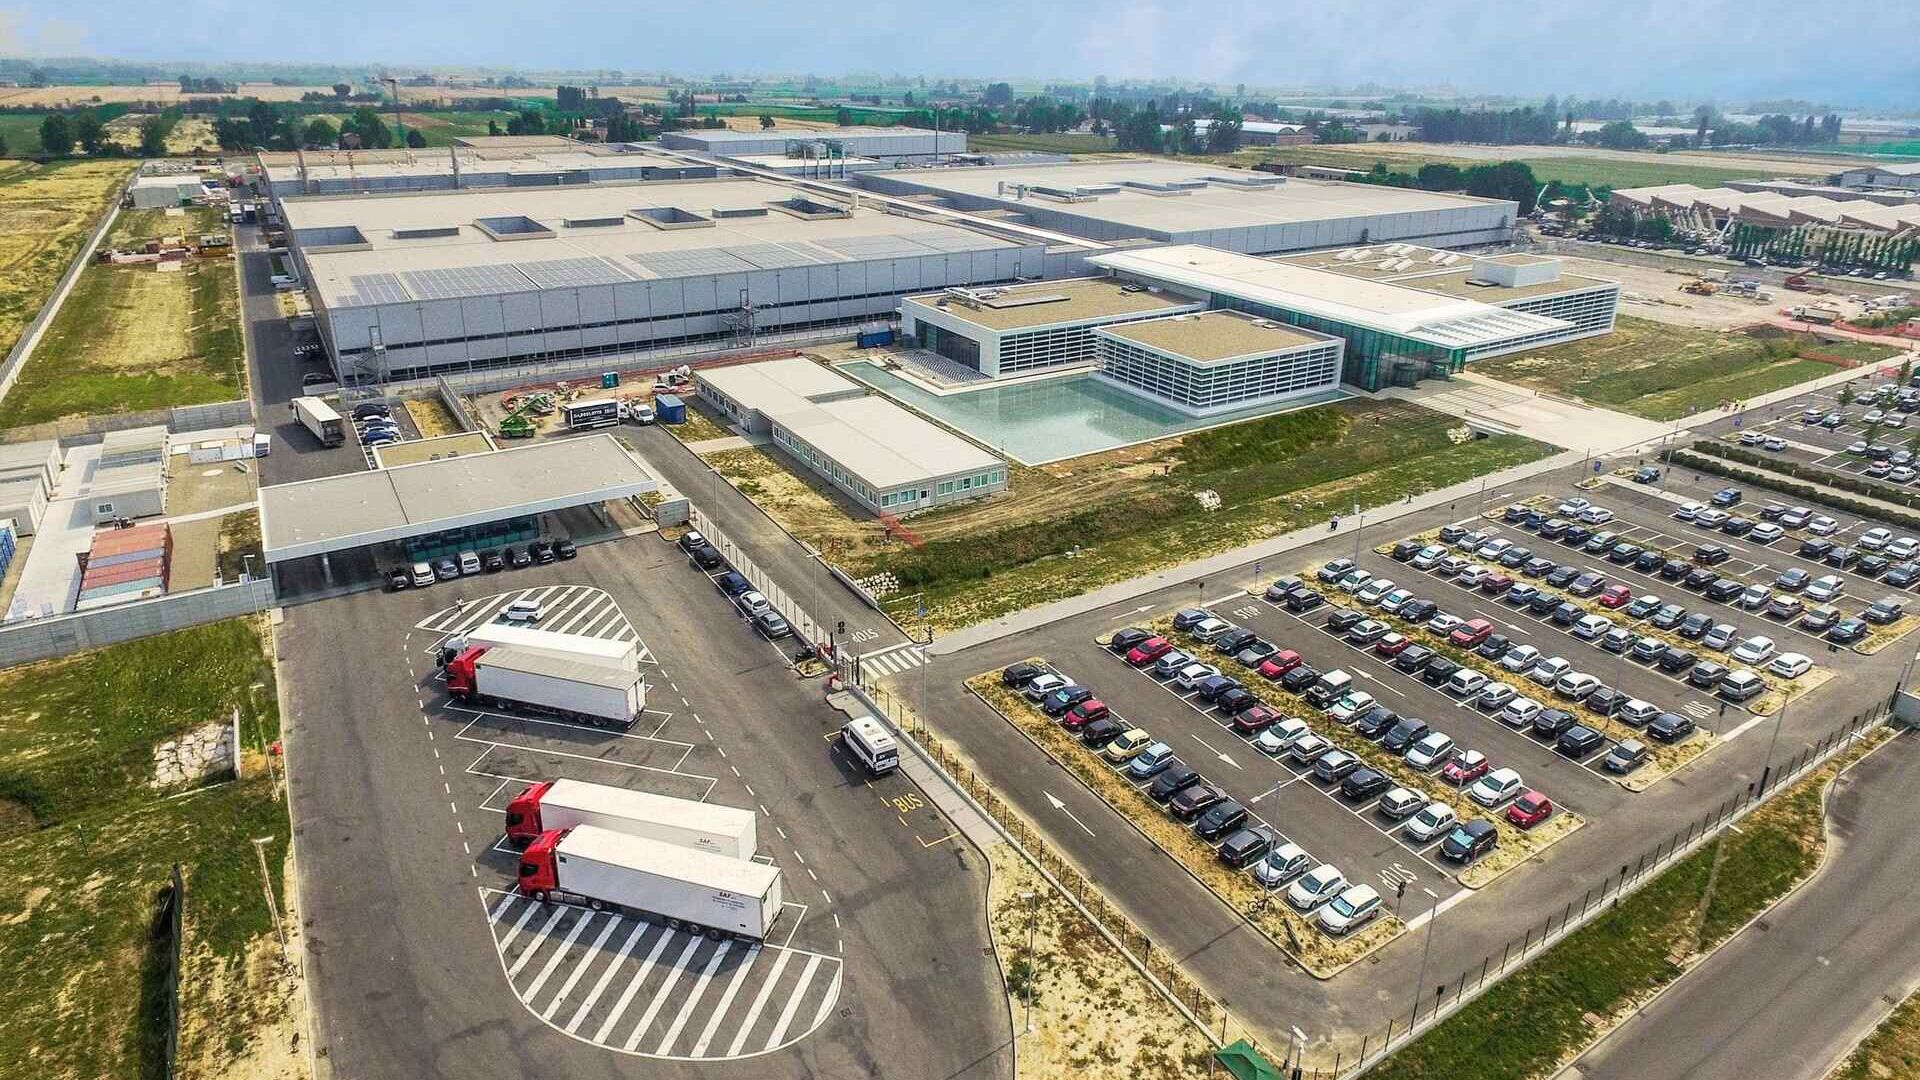 菲利普莫里斯：从上方俯瞰艾米利亚-罗马涅克雷斯佩拉诺的菲利普莫里斯制造和技术博洛尼亚工厂